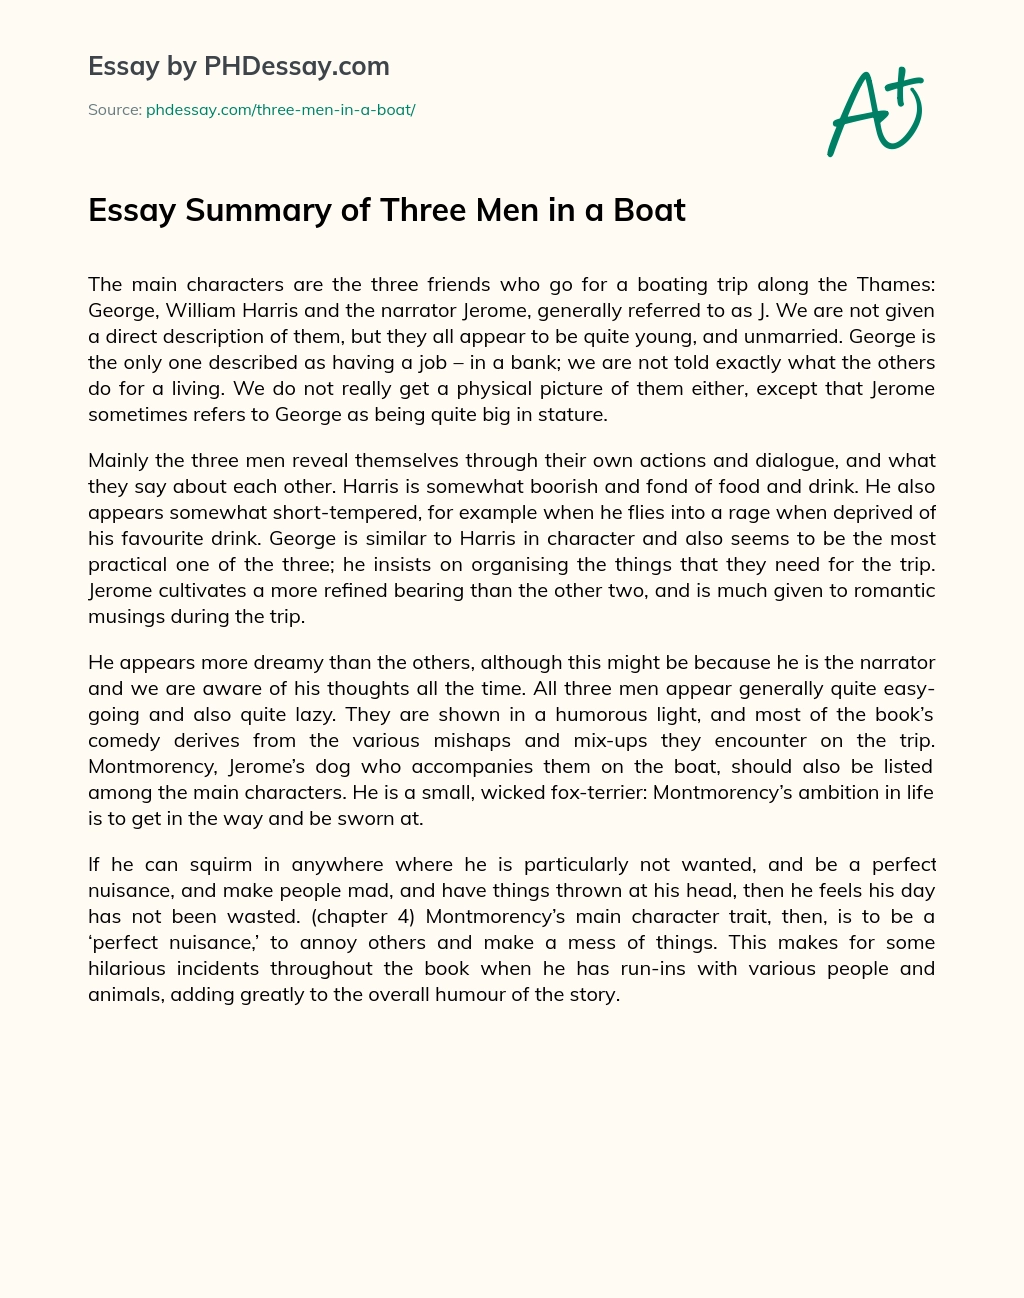 Essay Summary of Three Men in a Boat essay